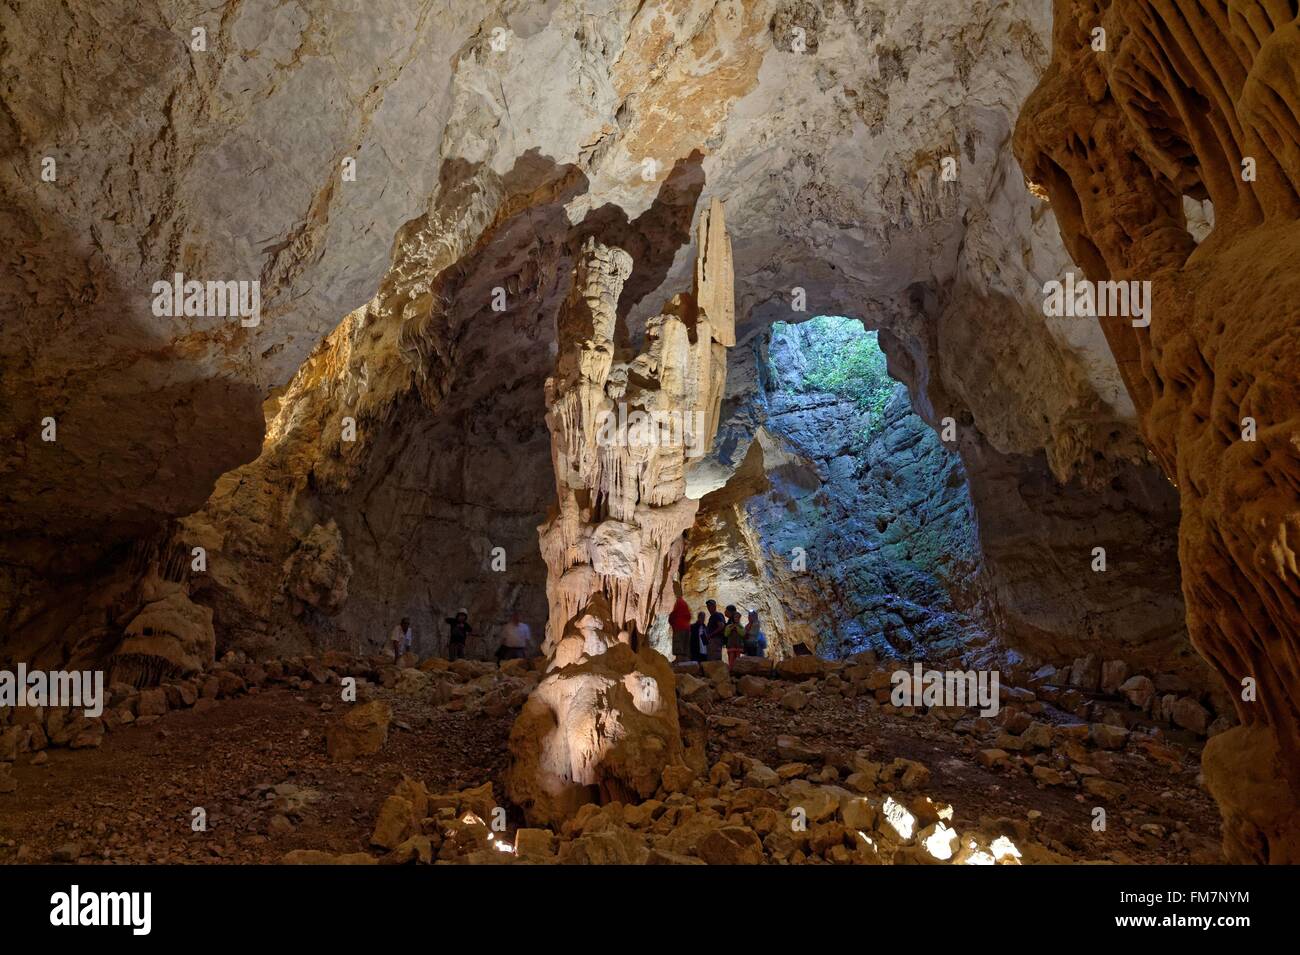 France, Herault, Saint Bauzile de Putois, Cave La Grotte des Demoiselles Stock Photo